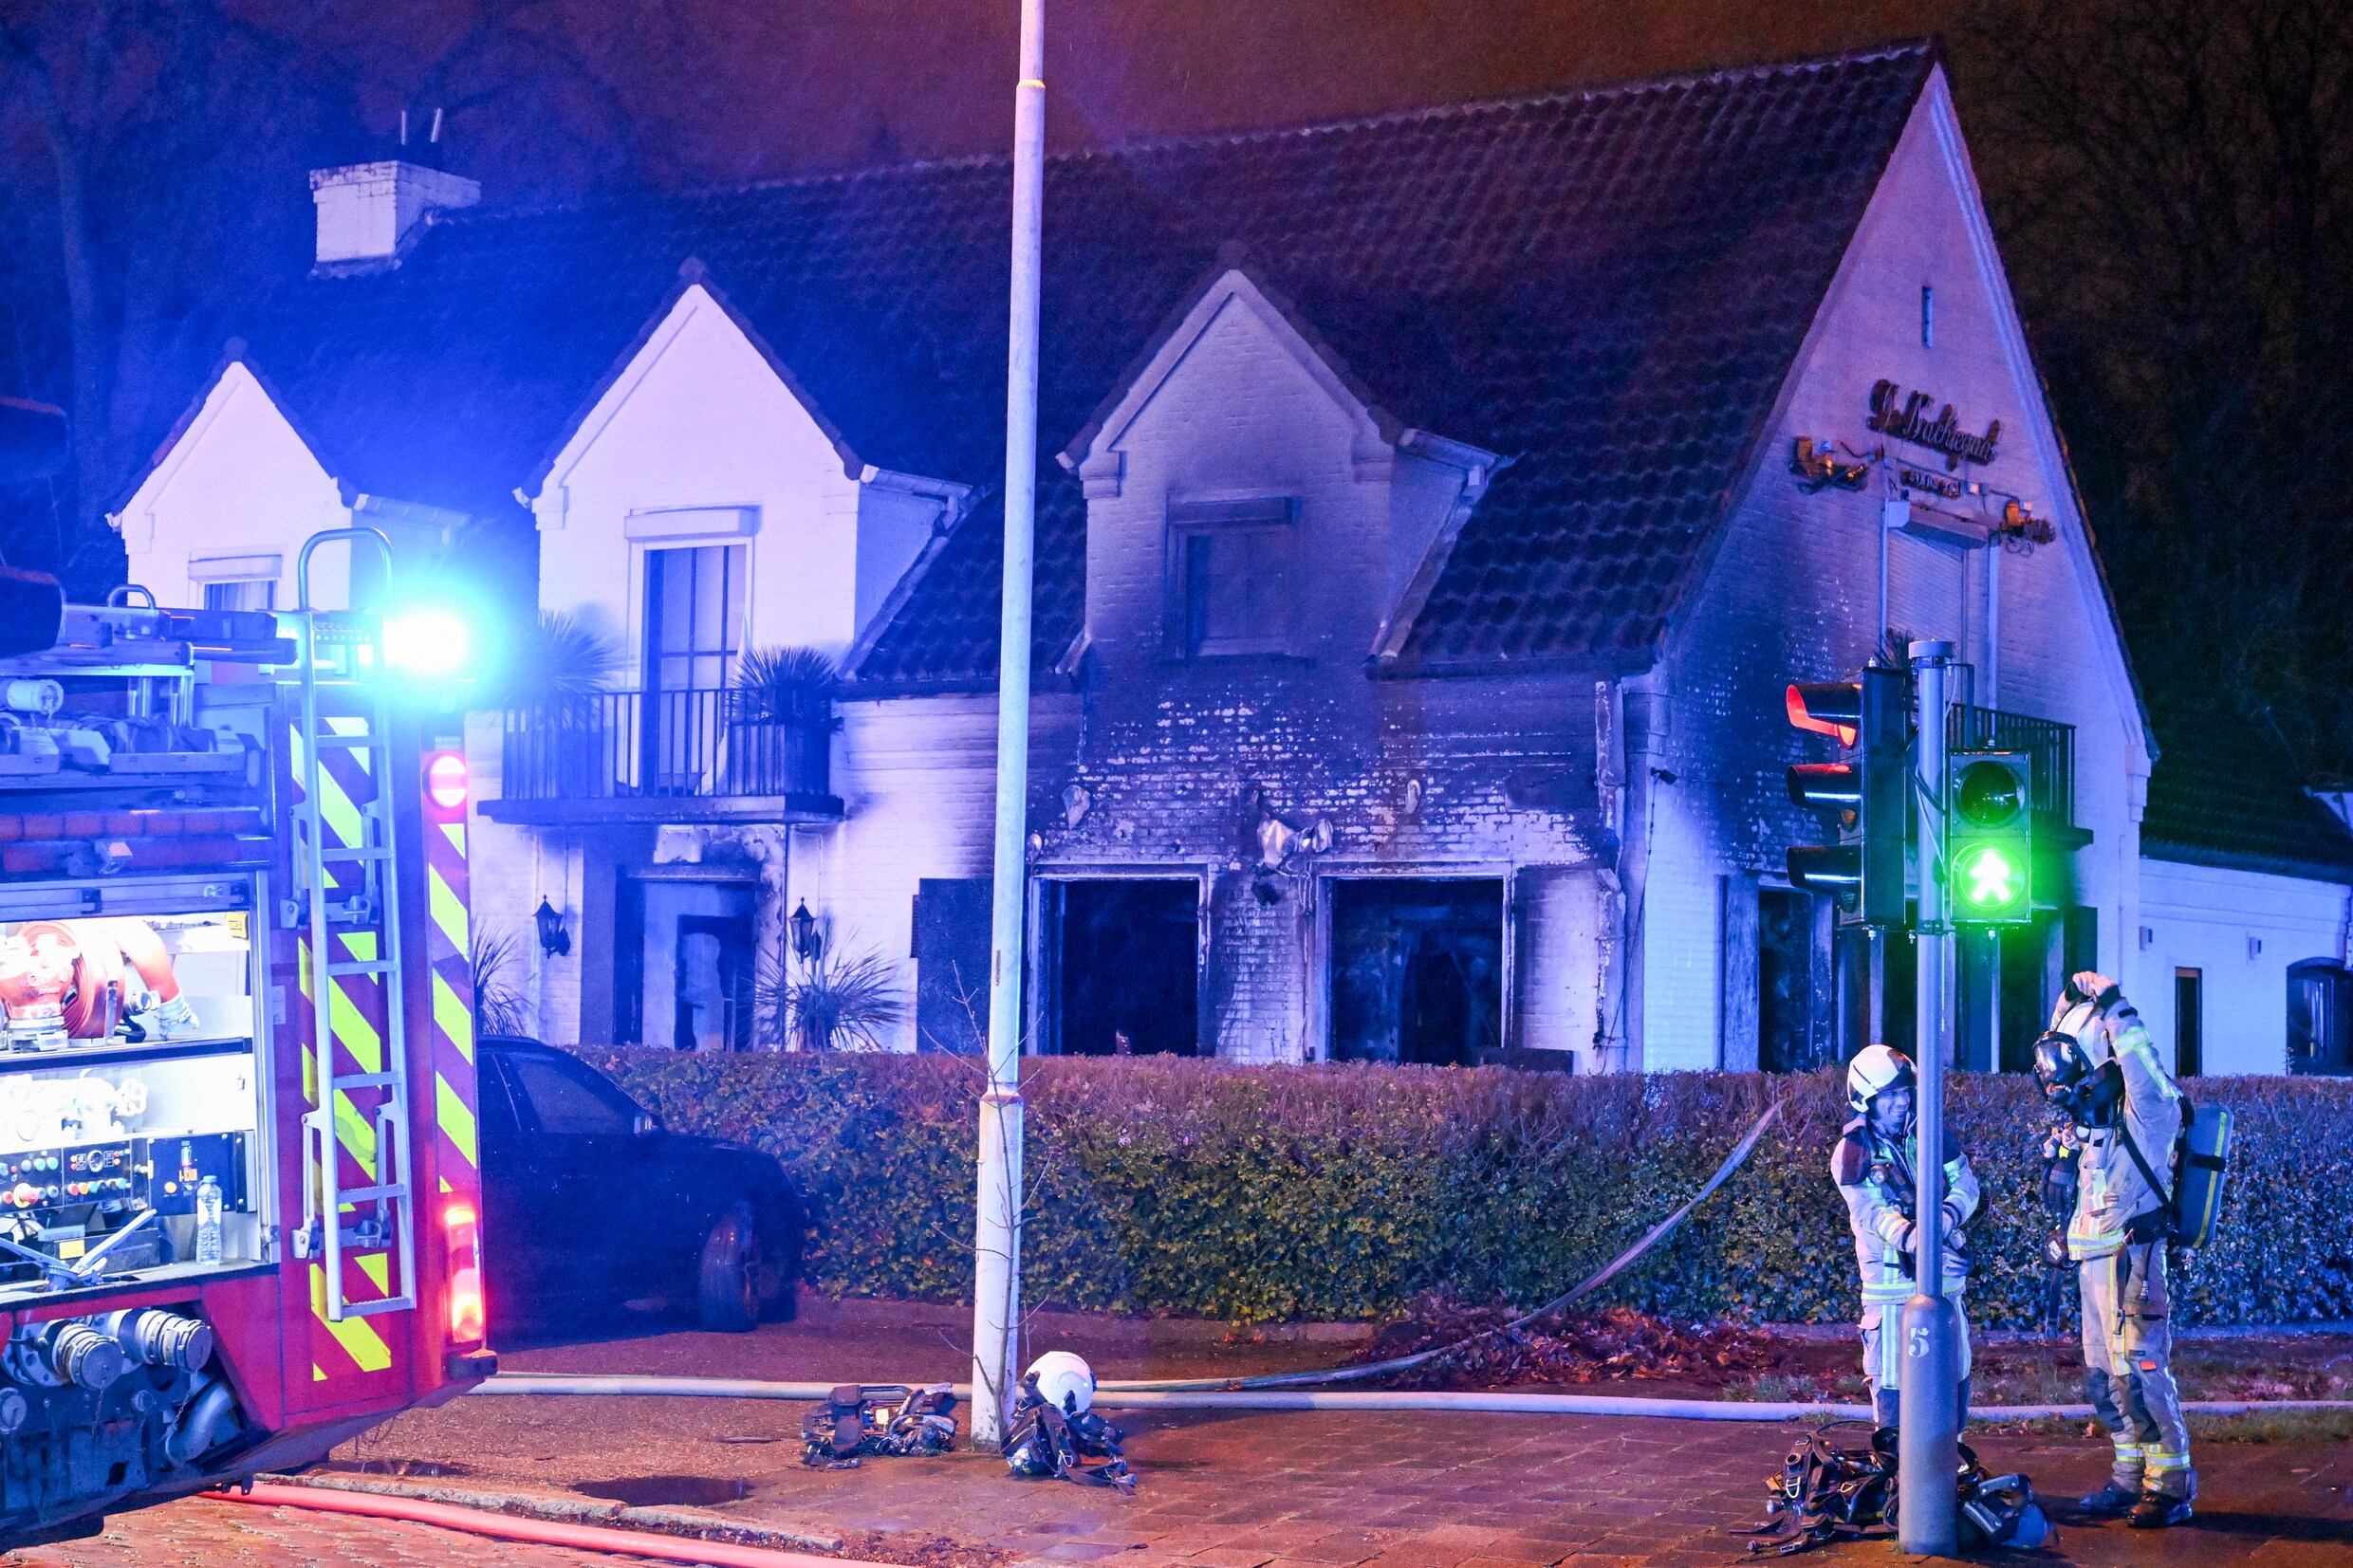 Bekend restaurant in Antwerpen De Nachtegaal brandt uit op kerstnacht: twee verdachten opgepakt, mogelijk link met drugsgeweld